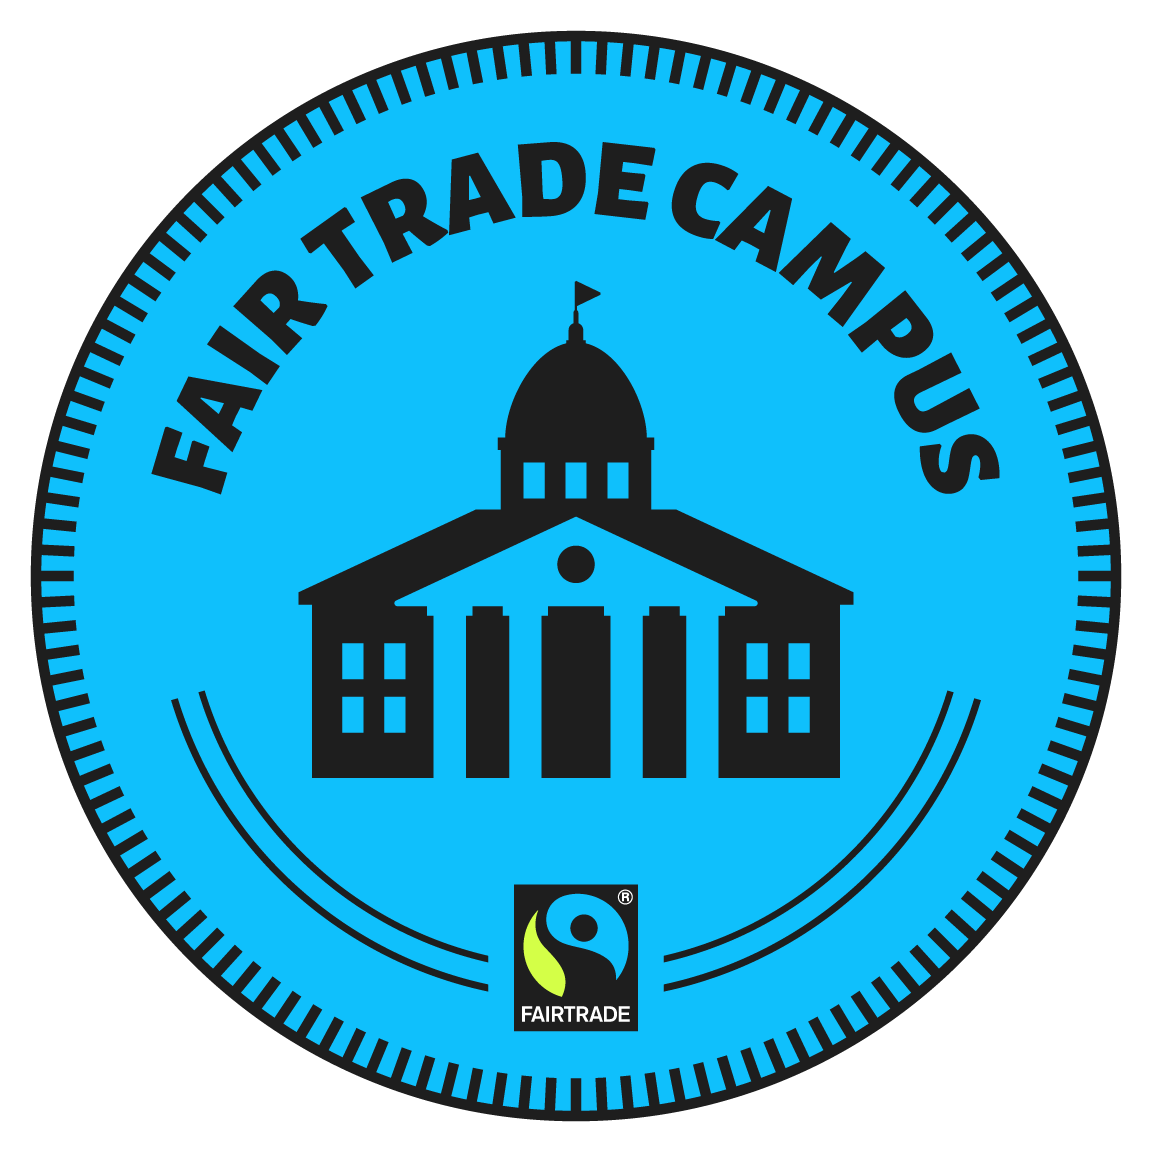 fair-trade-campus